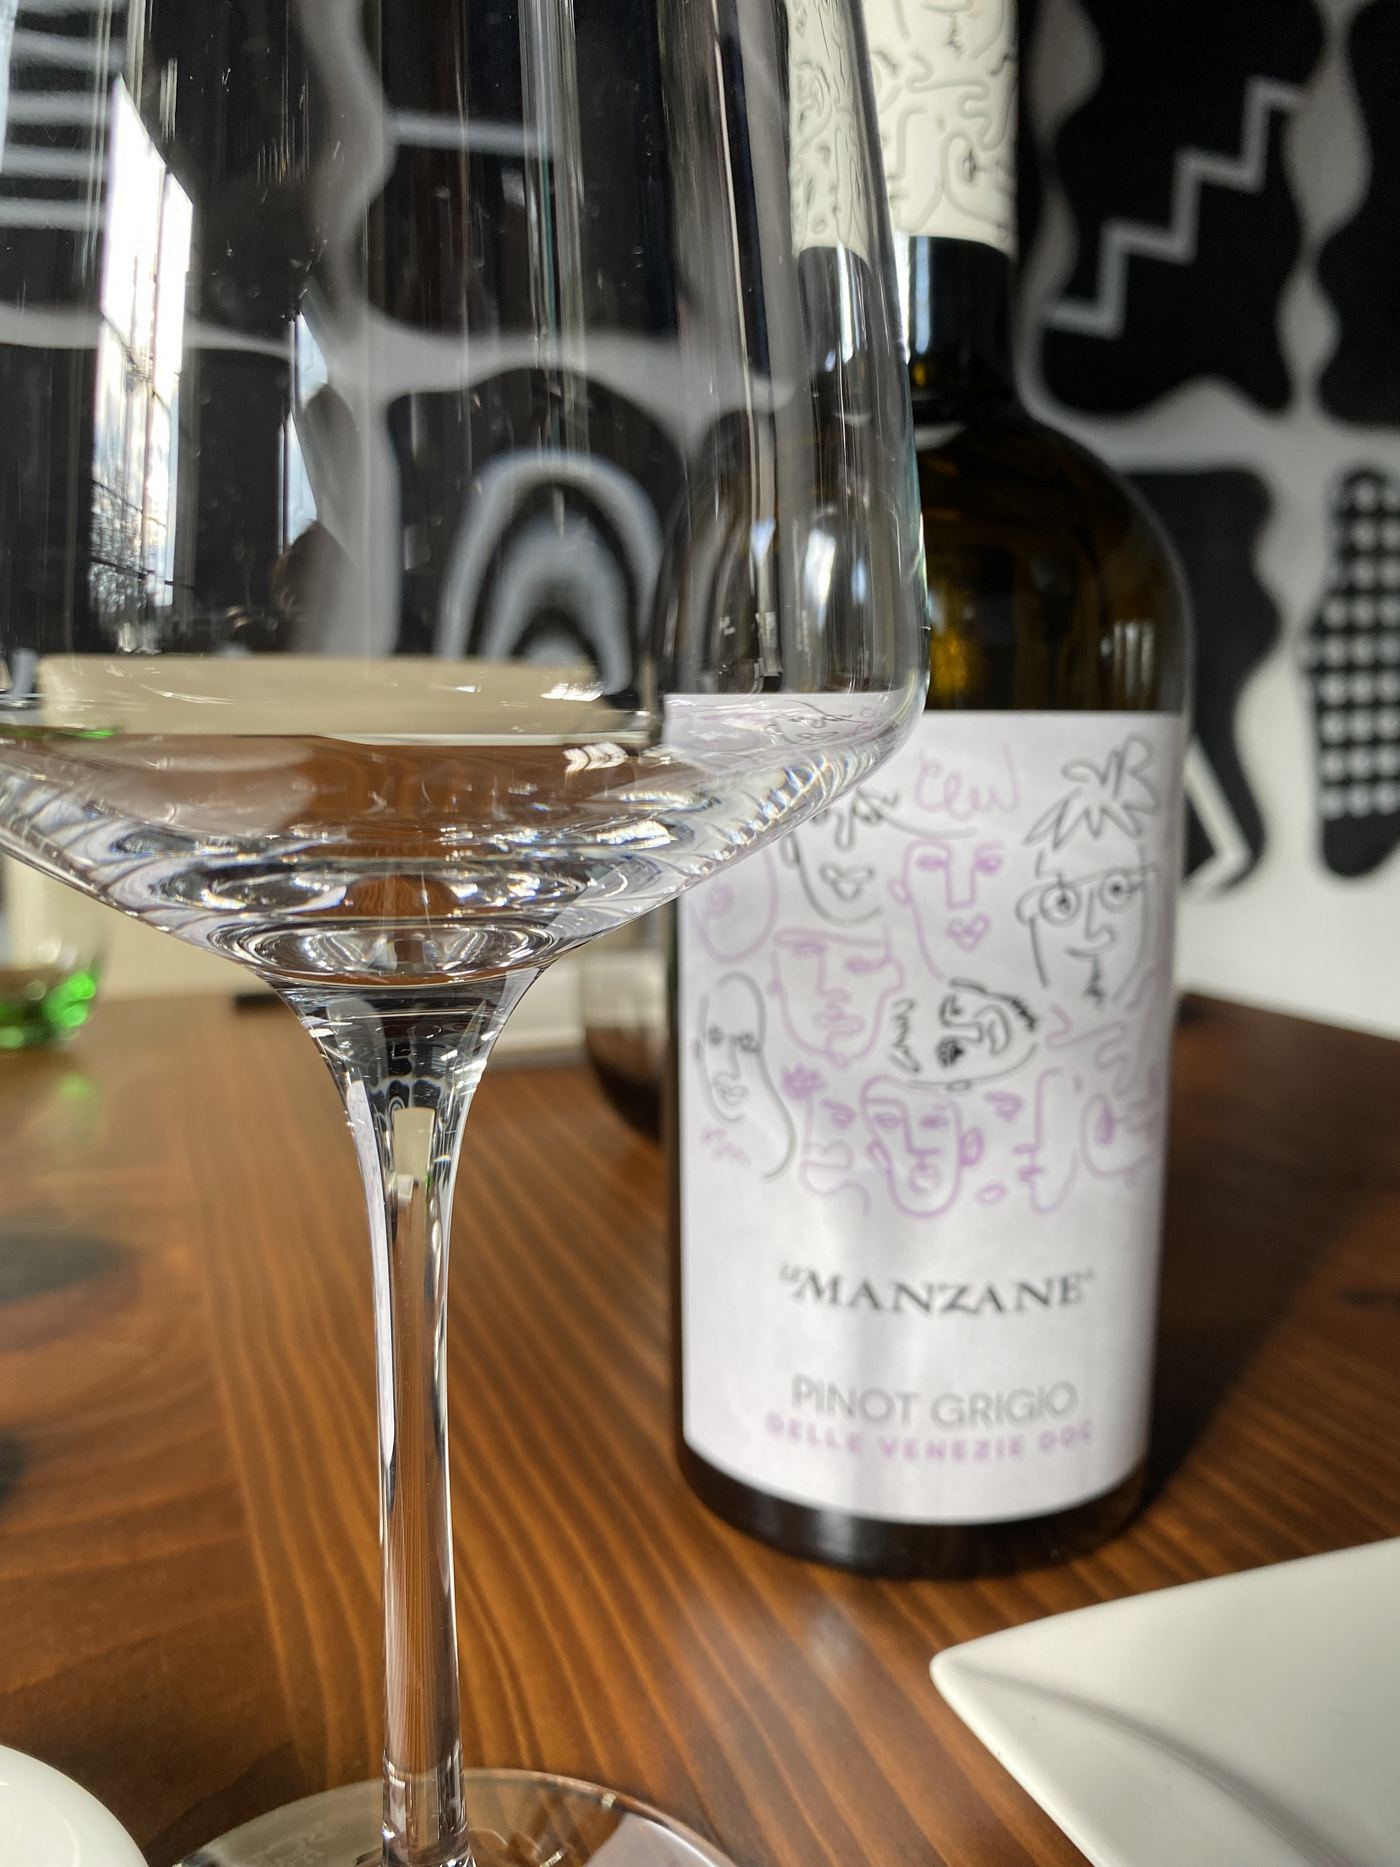 Le Manzane Pinot grigio 2020